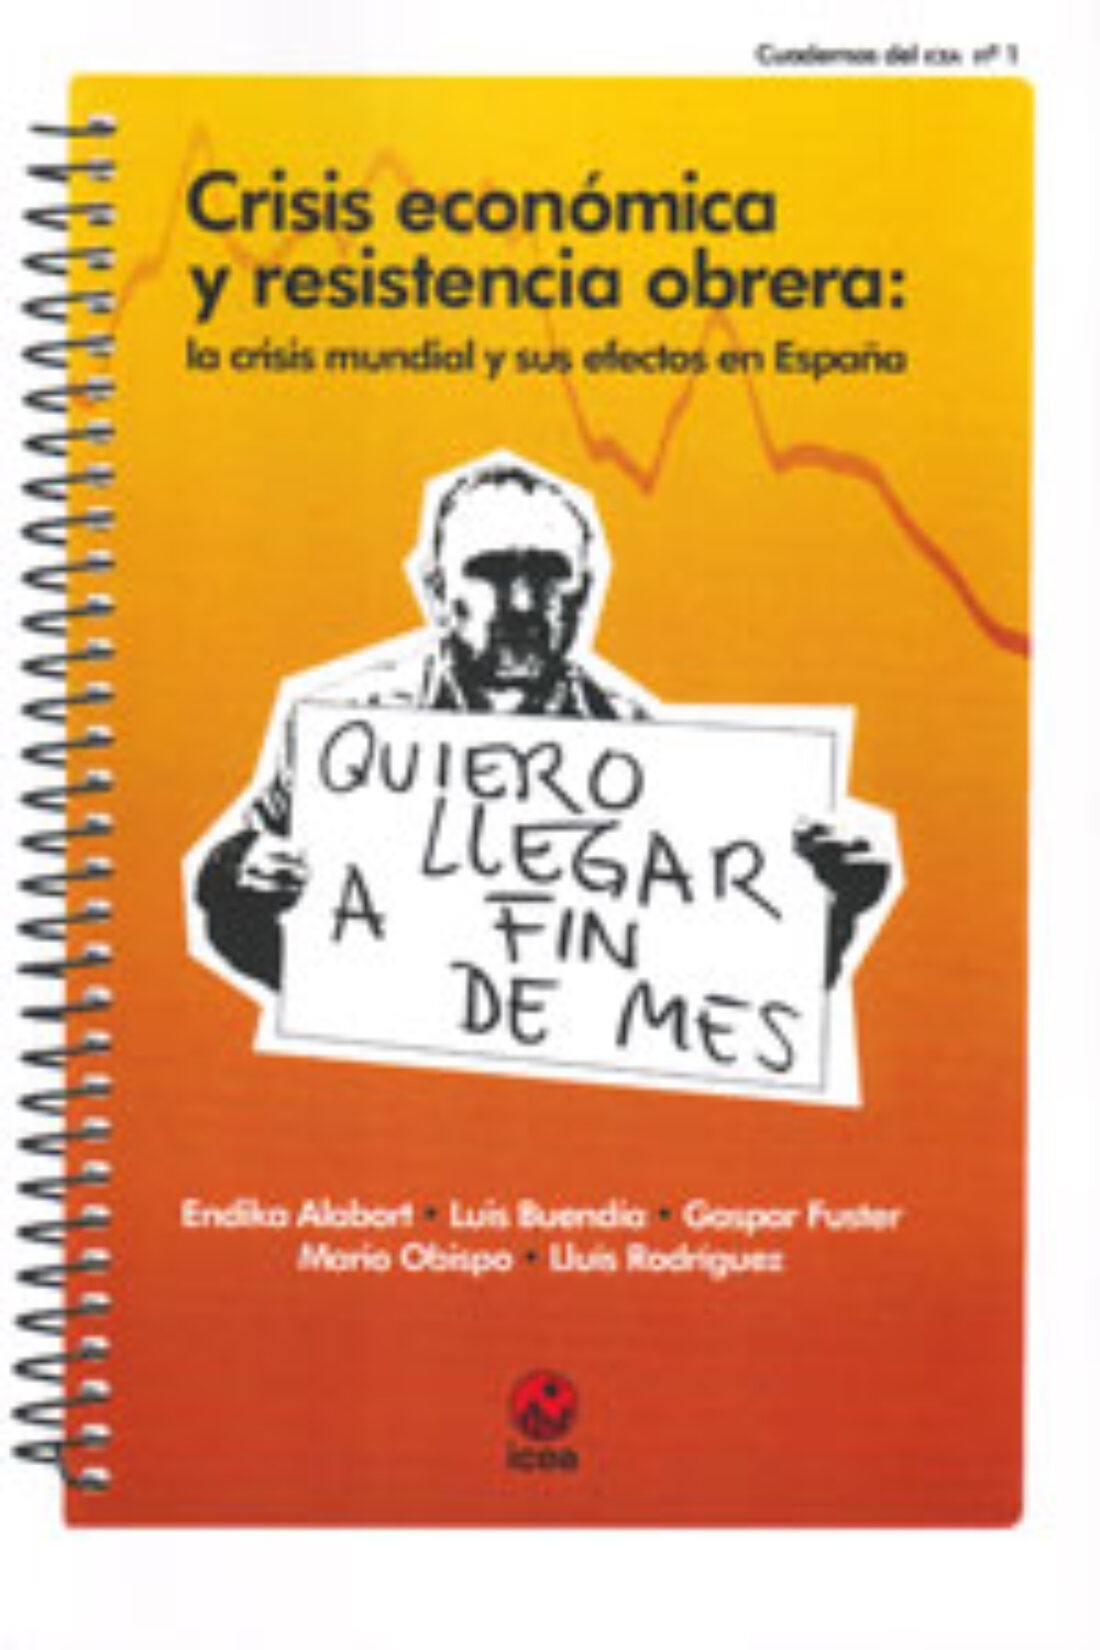 Madrid, LaMalatesta : Viernes 22, 19:30h. Crisis económica y resistencia obrera : la crisis mundial y sus efectos en España